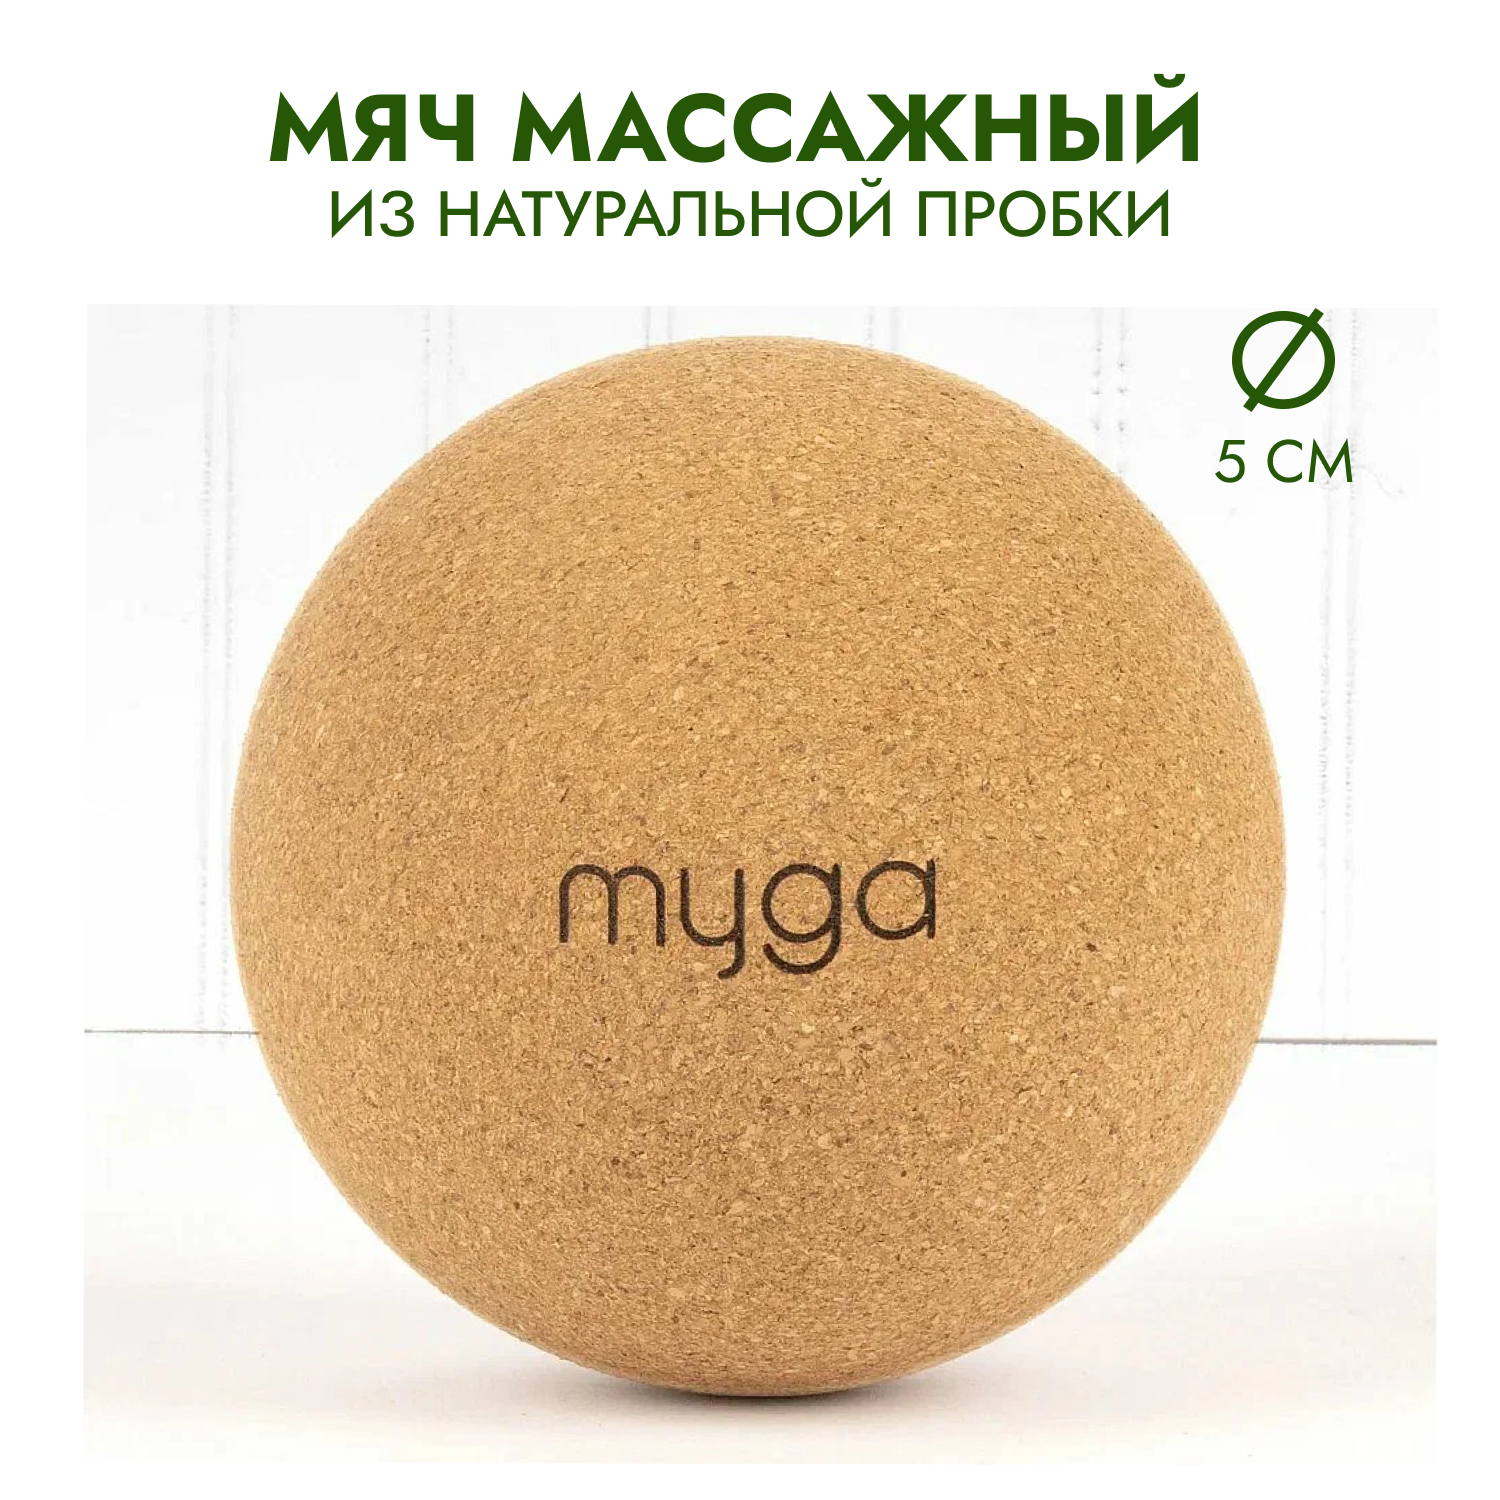 Массажный мяч для МФР из натуральной пробки MYGA Massage Cork Ball 5 см